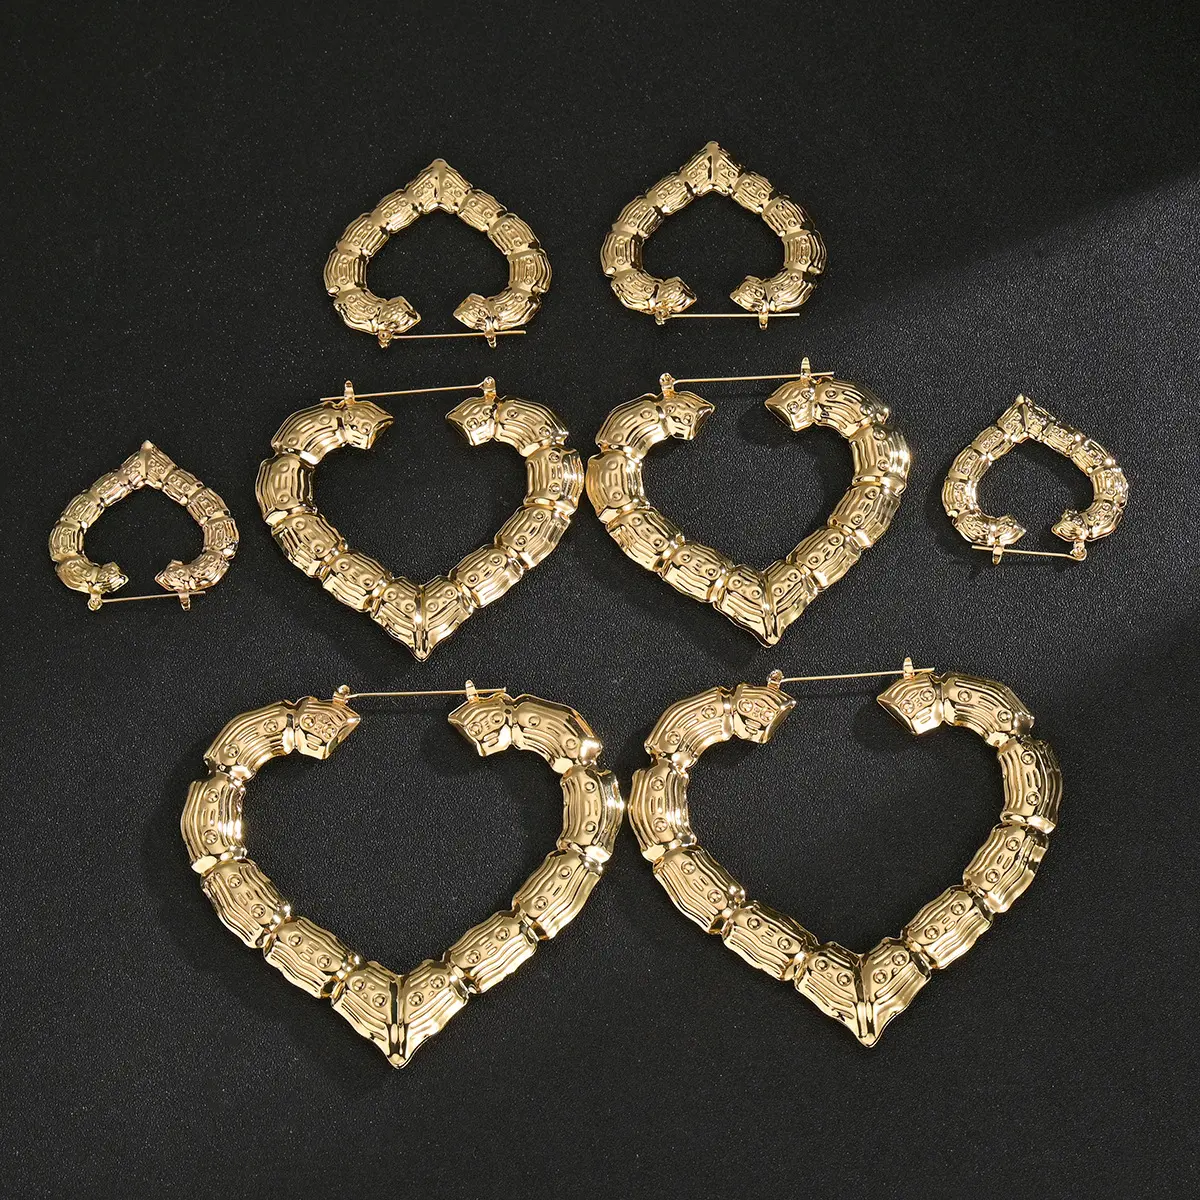 Sıcak satış abartılı kalp şekli yuvarlak düzensiz geometrik altın kaplama özelleştirmek adı kraliçe bambu küpe kadınlar için